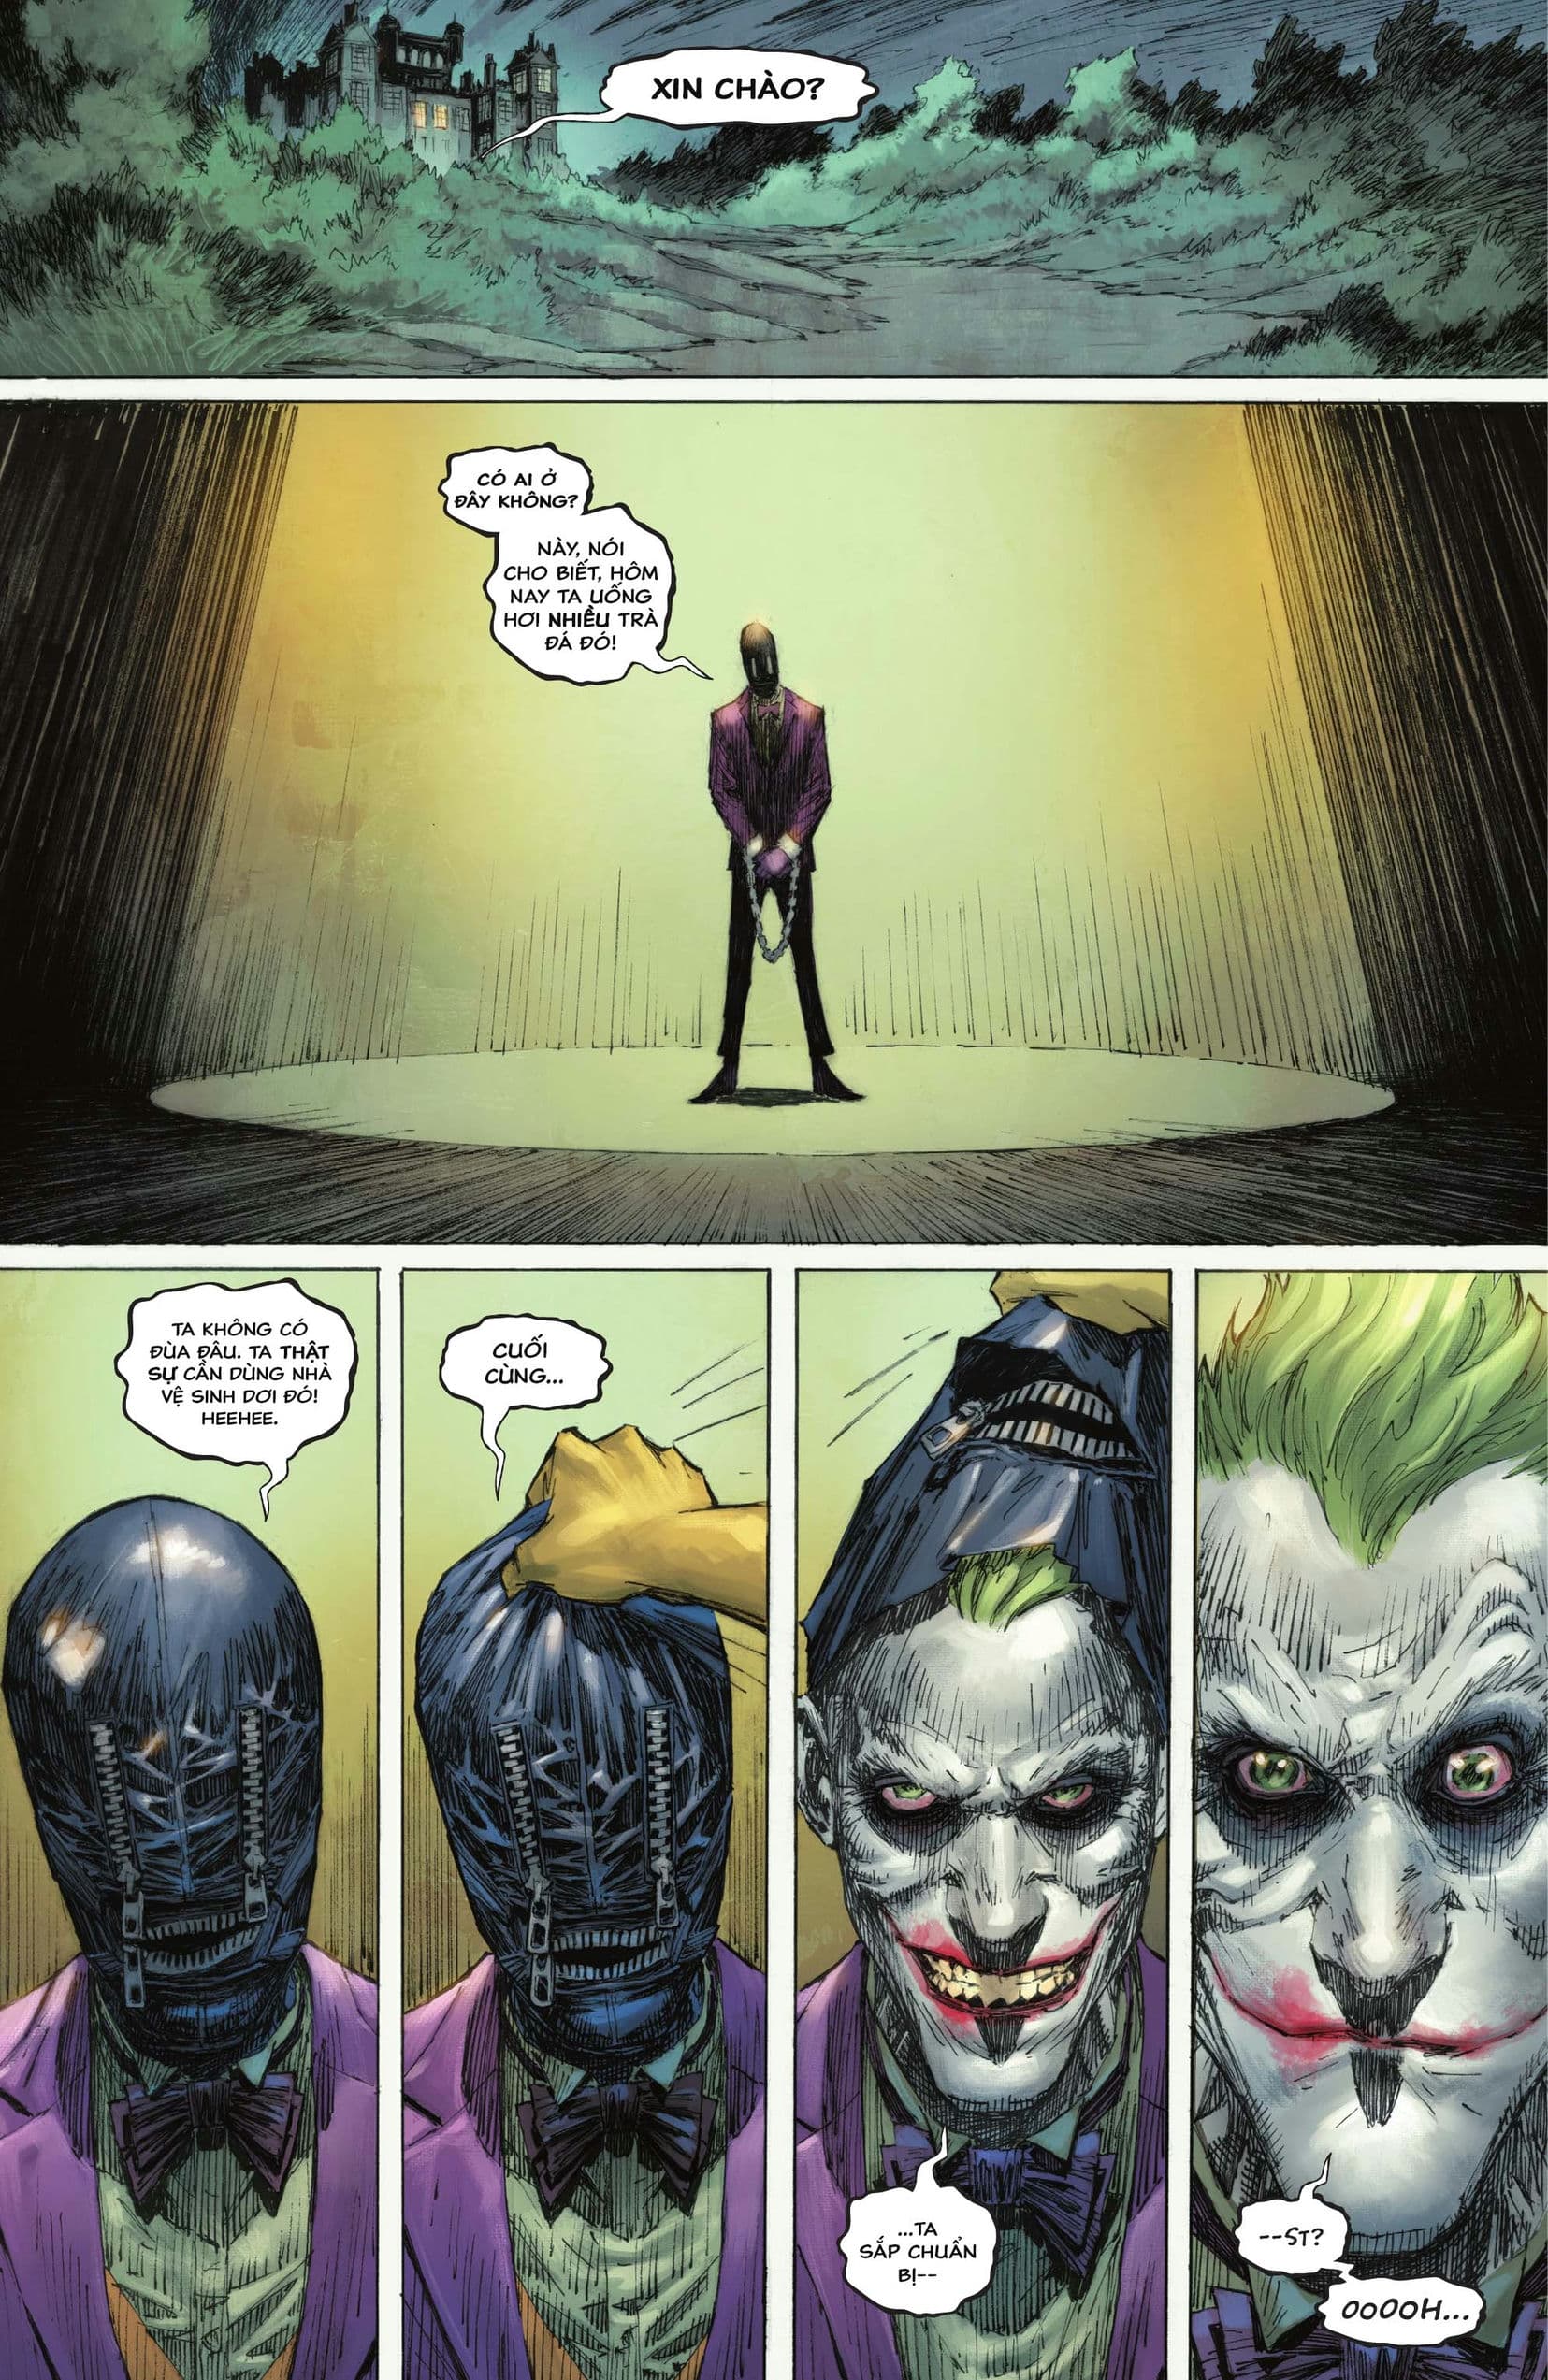 https://langgeek.net/wp-content/webpc-passthru.php?src=https://langgeek.net/wp-content/uploads/2023/04/Batman-_-The-Joker-The-Deadly-Duo-2022-005-012.jpg&nocache=1